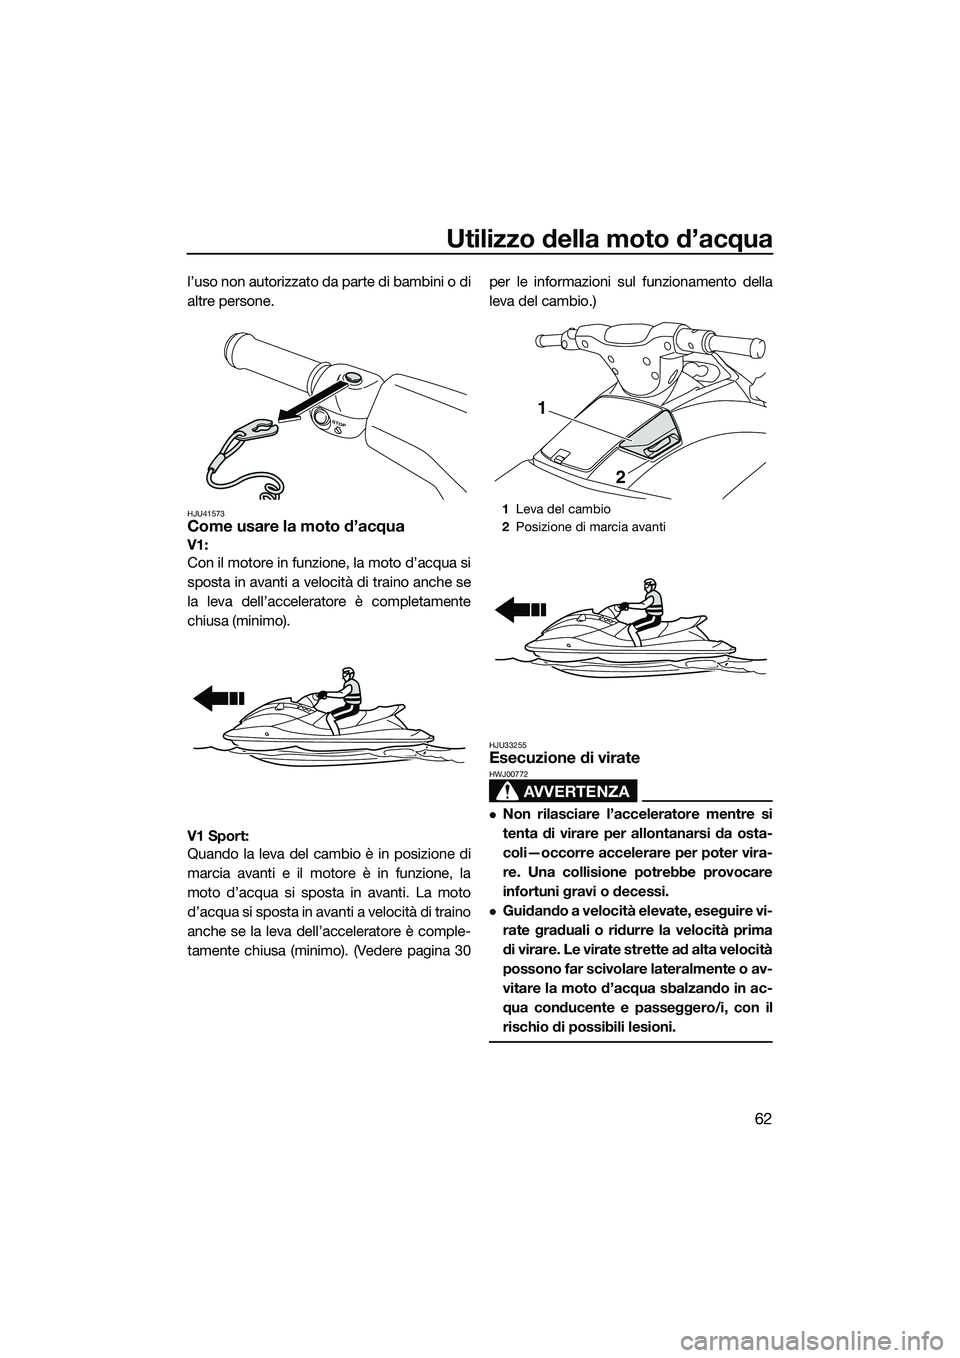 YAMAHA V1 2015  Manuale duso (in Italian) Utilizzo della moto d’acqua
62
l’uso non autorizzato da parte di bambini o di
altre persone.
HJU41573Come usare la moto d’acqua
V1: 
Con il motore in funzione, la moto d’acqua si
sposta in ava